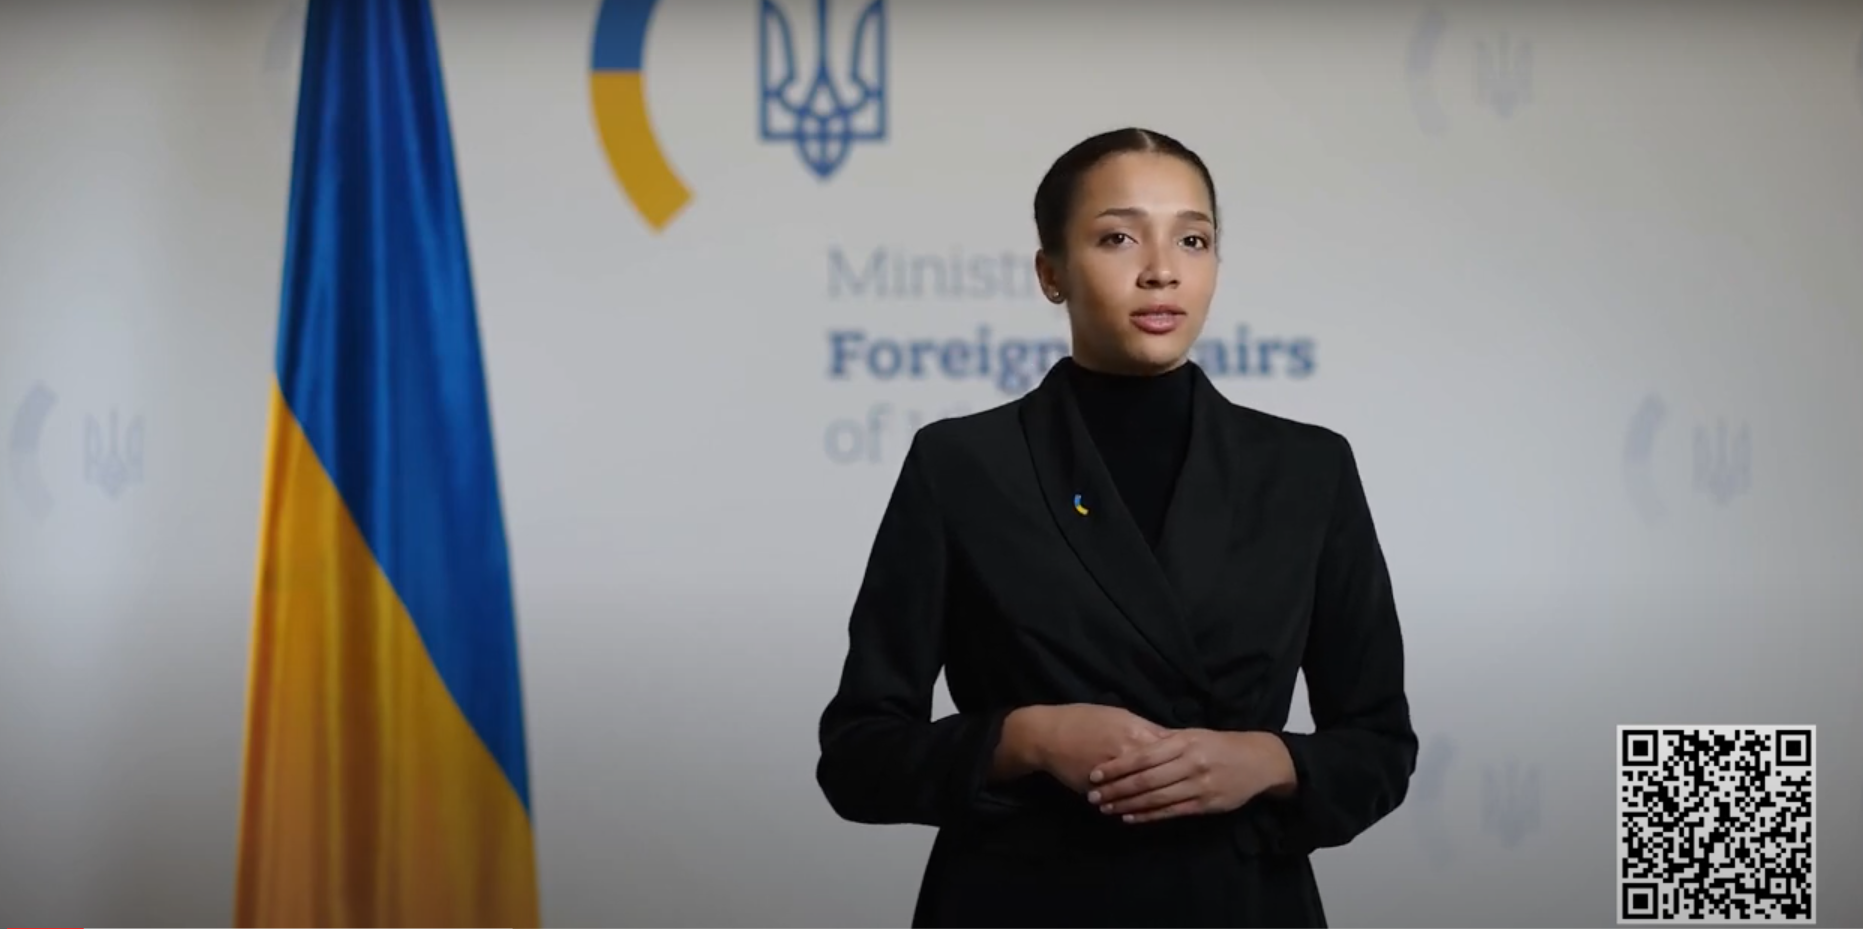 МЗС України для інформування щодо консульських питань буде використовувати спікерку, створену ШІ. Відео 